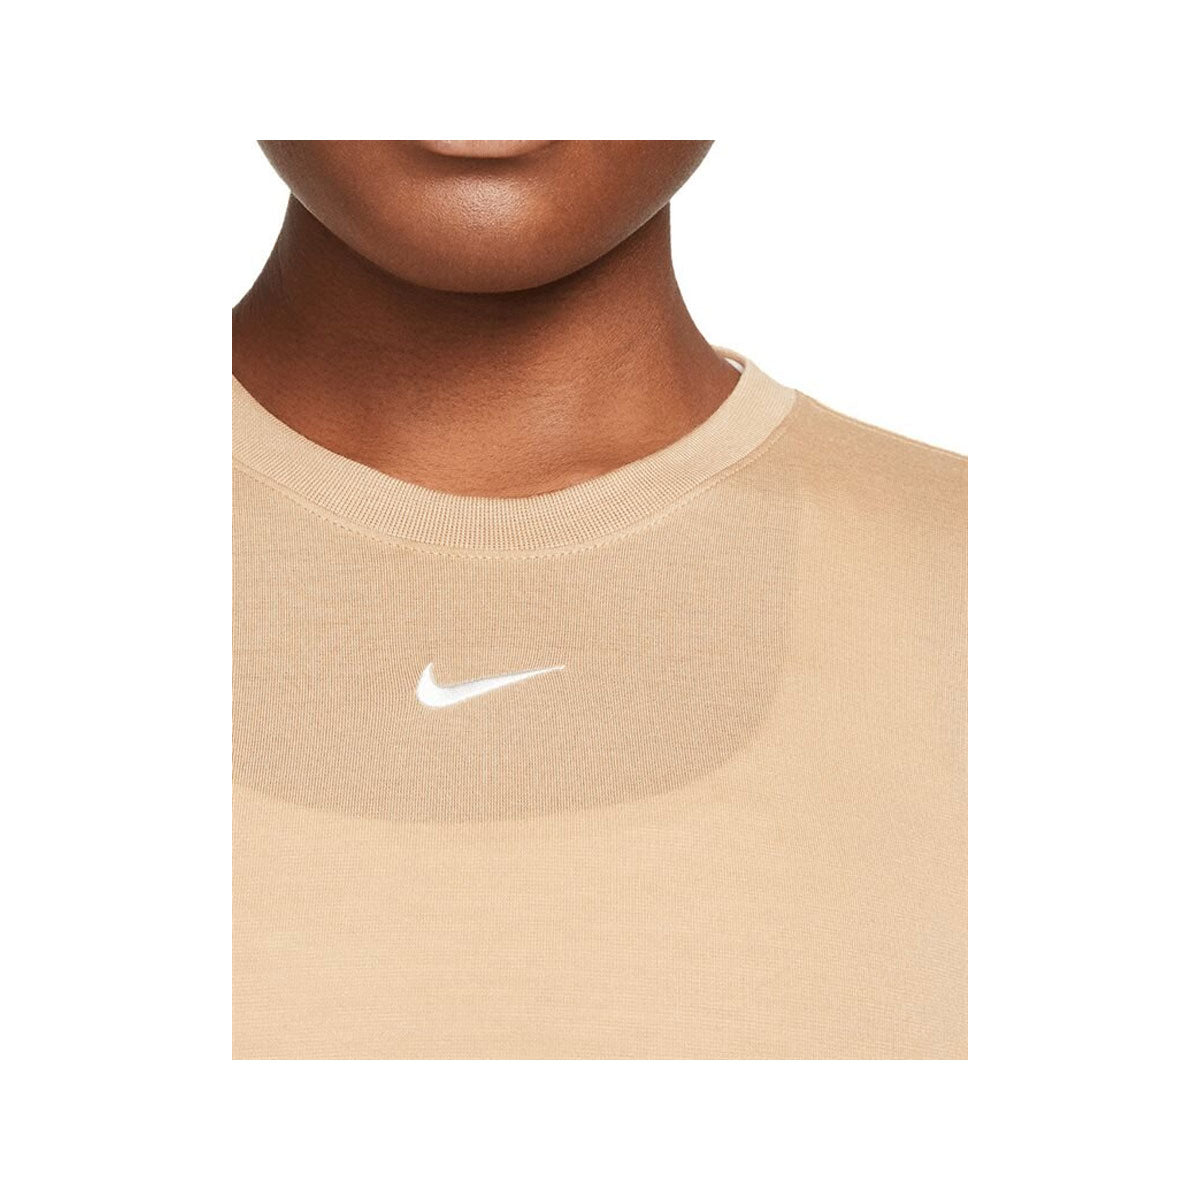 Nike Women's Sportswear Essential Crop Top Hemp